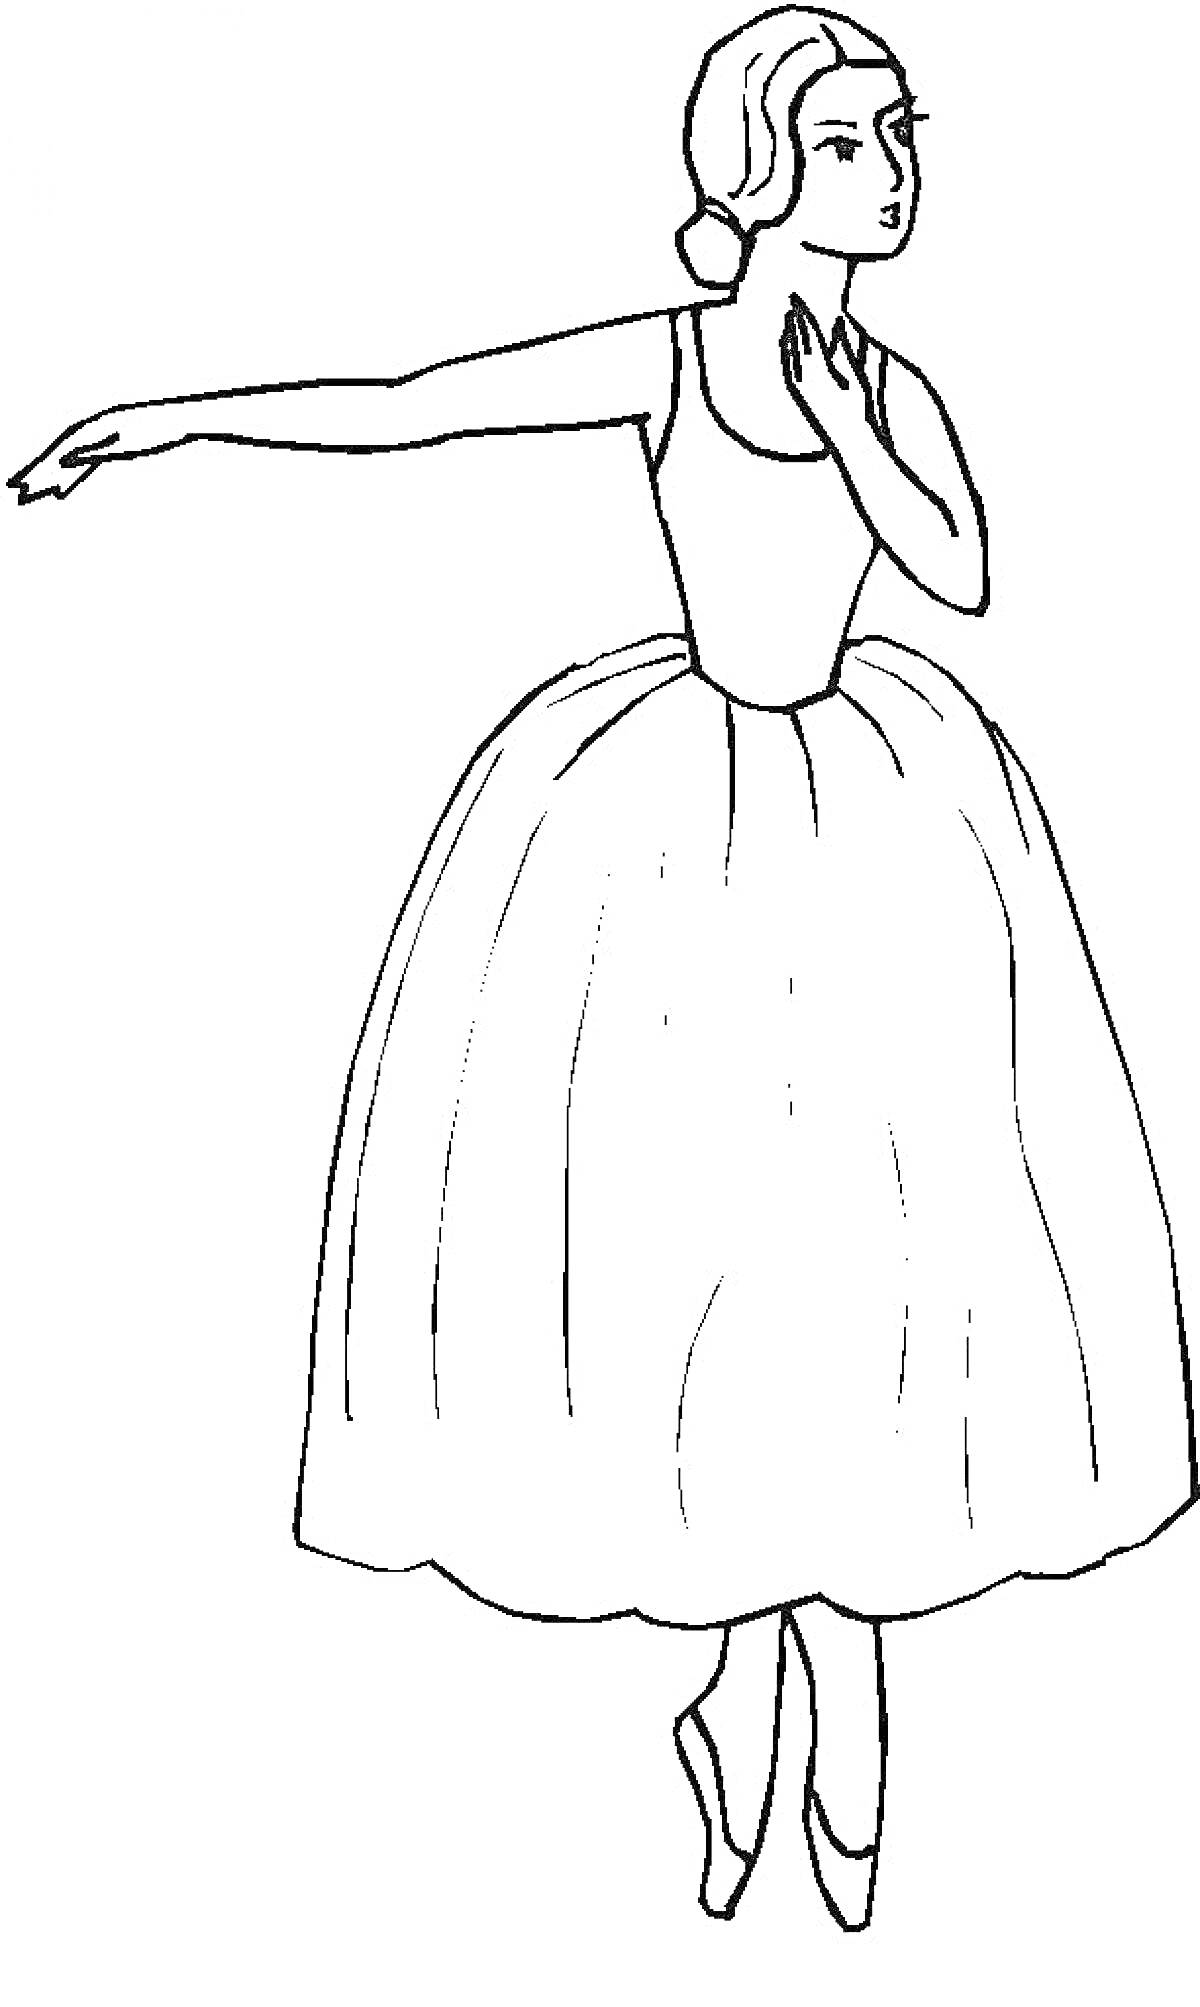 Балерина в пуантах с вытянутой рукой